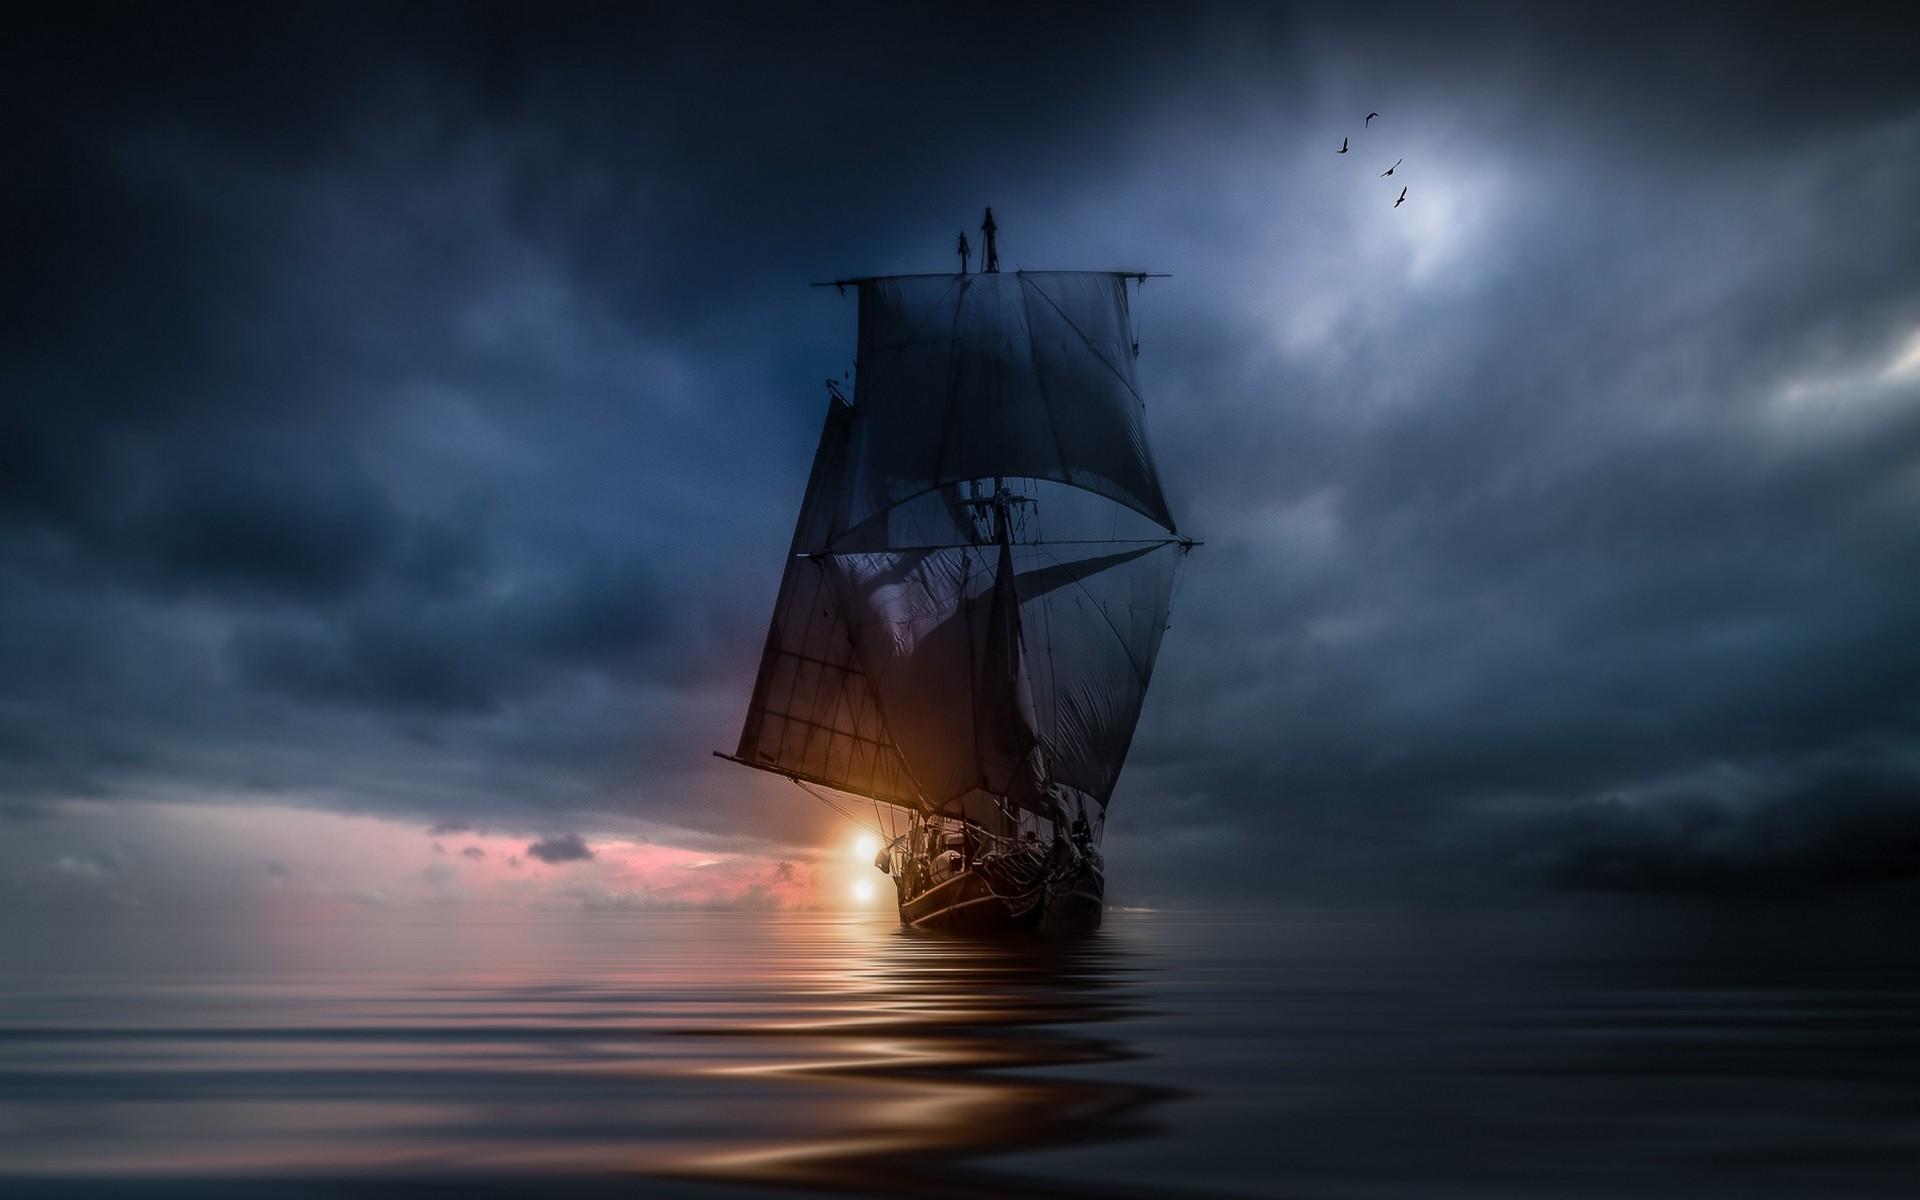 landscape, Nature, Sea, Clouds, Sunset, Sailing Ship, Storm, Blue